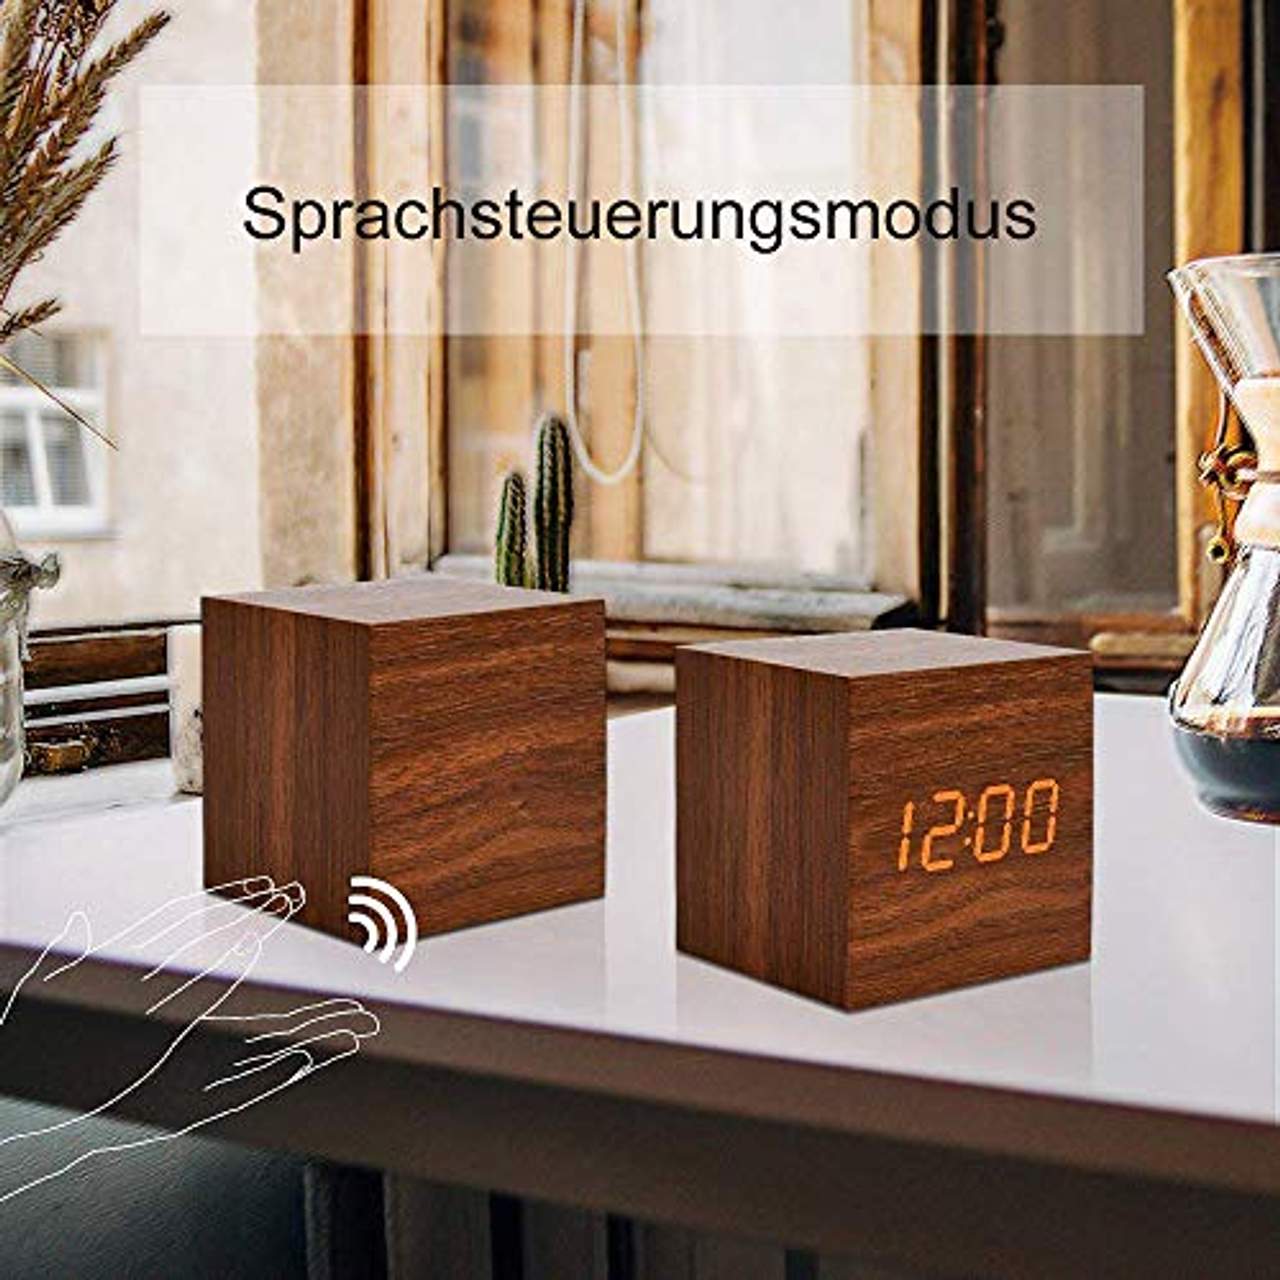 fomobest LED Wecker Wiederaufladbar Holz Tischuhr Klein Cube Datum